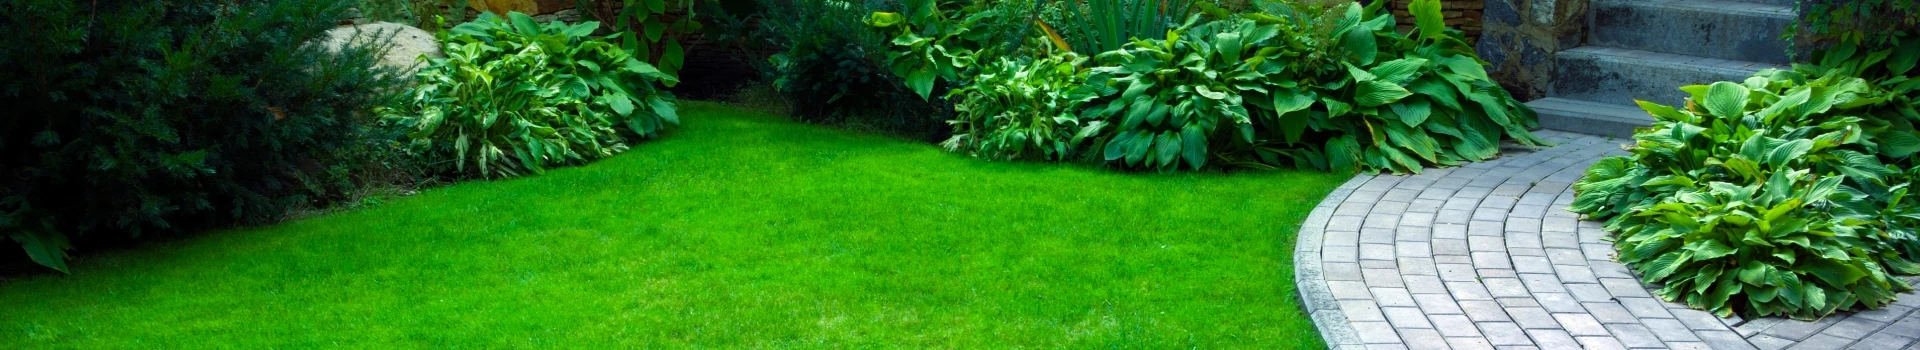 banner - zielona trawa mała architektura zieleni